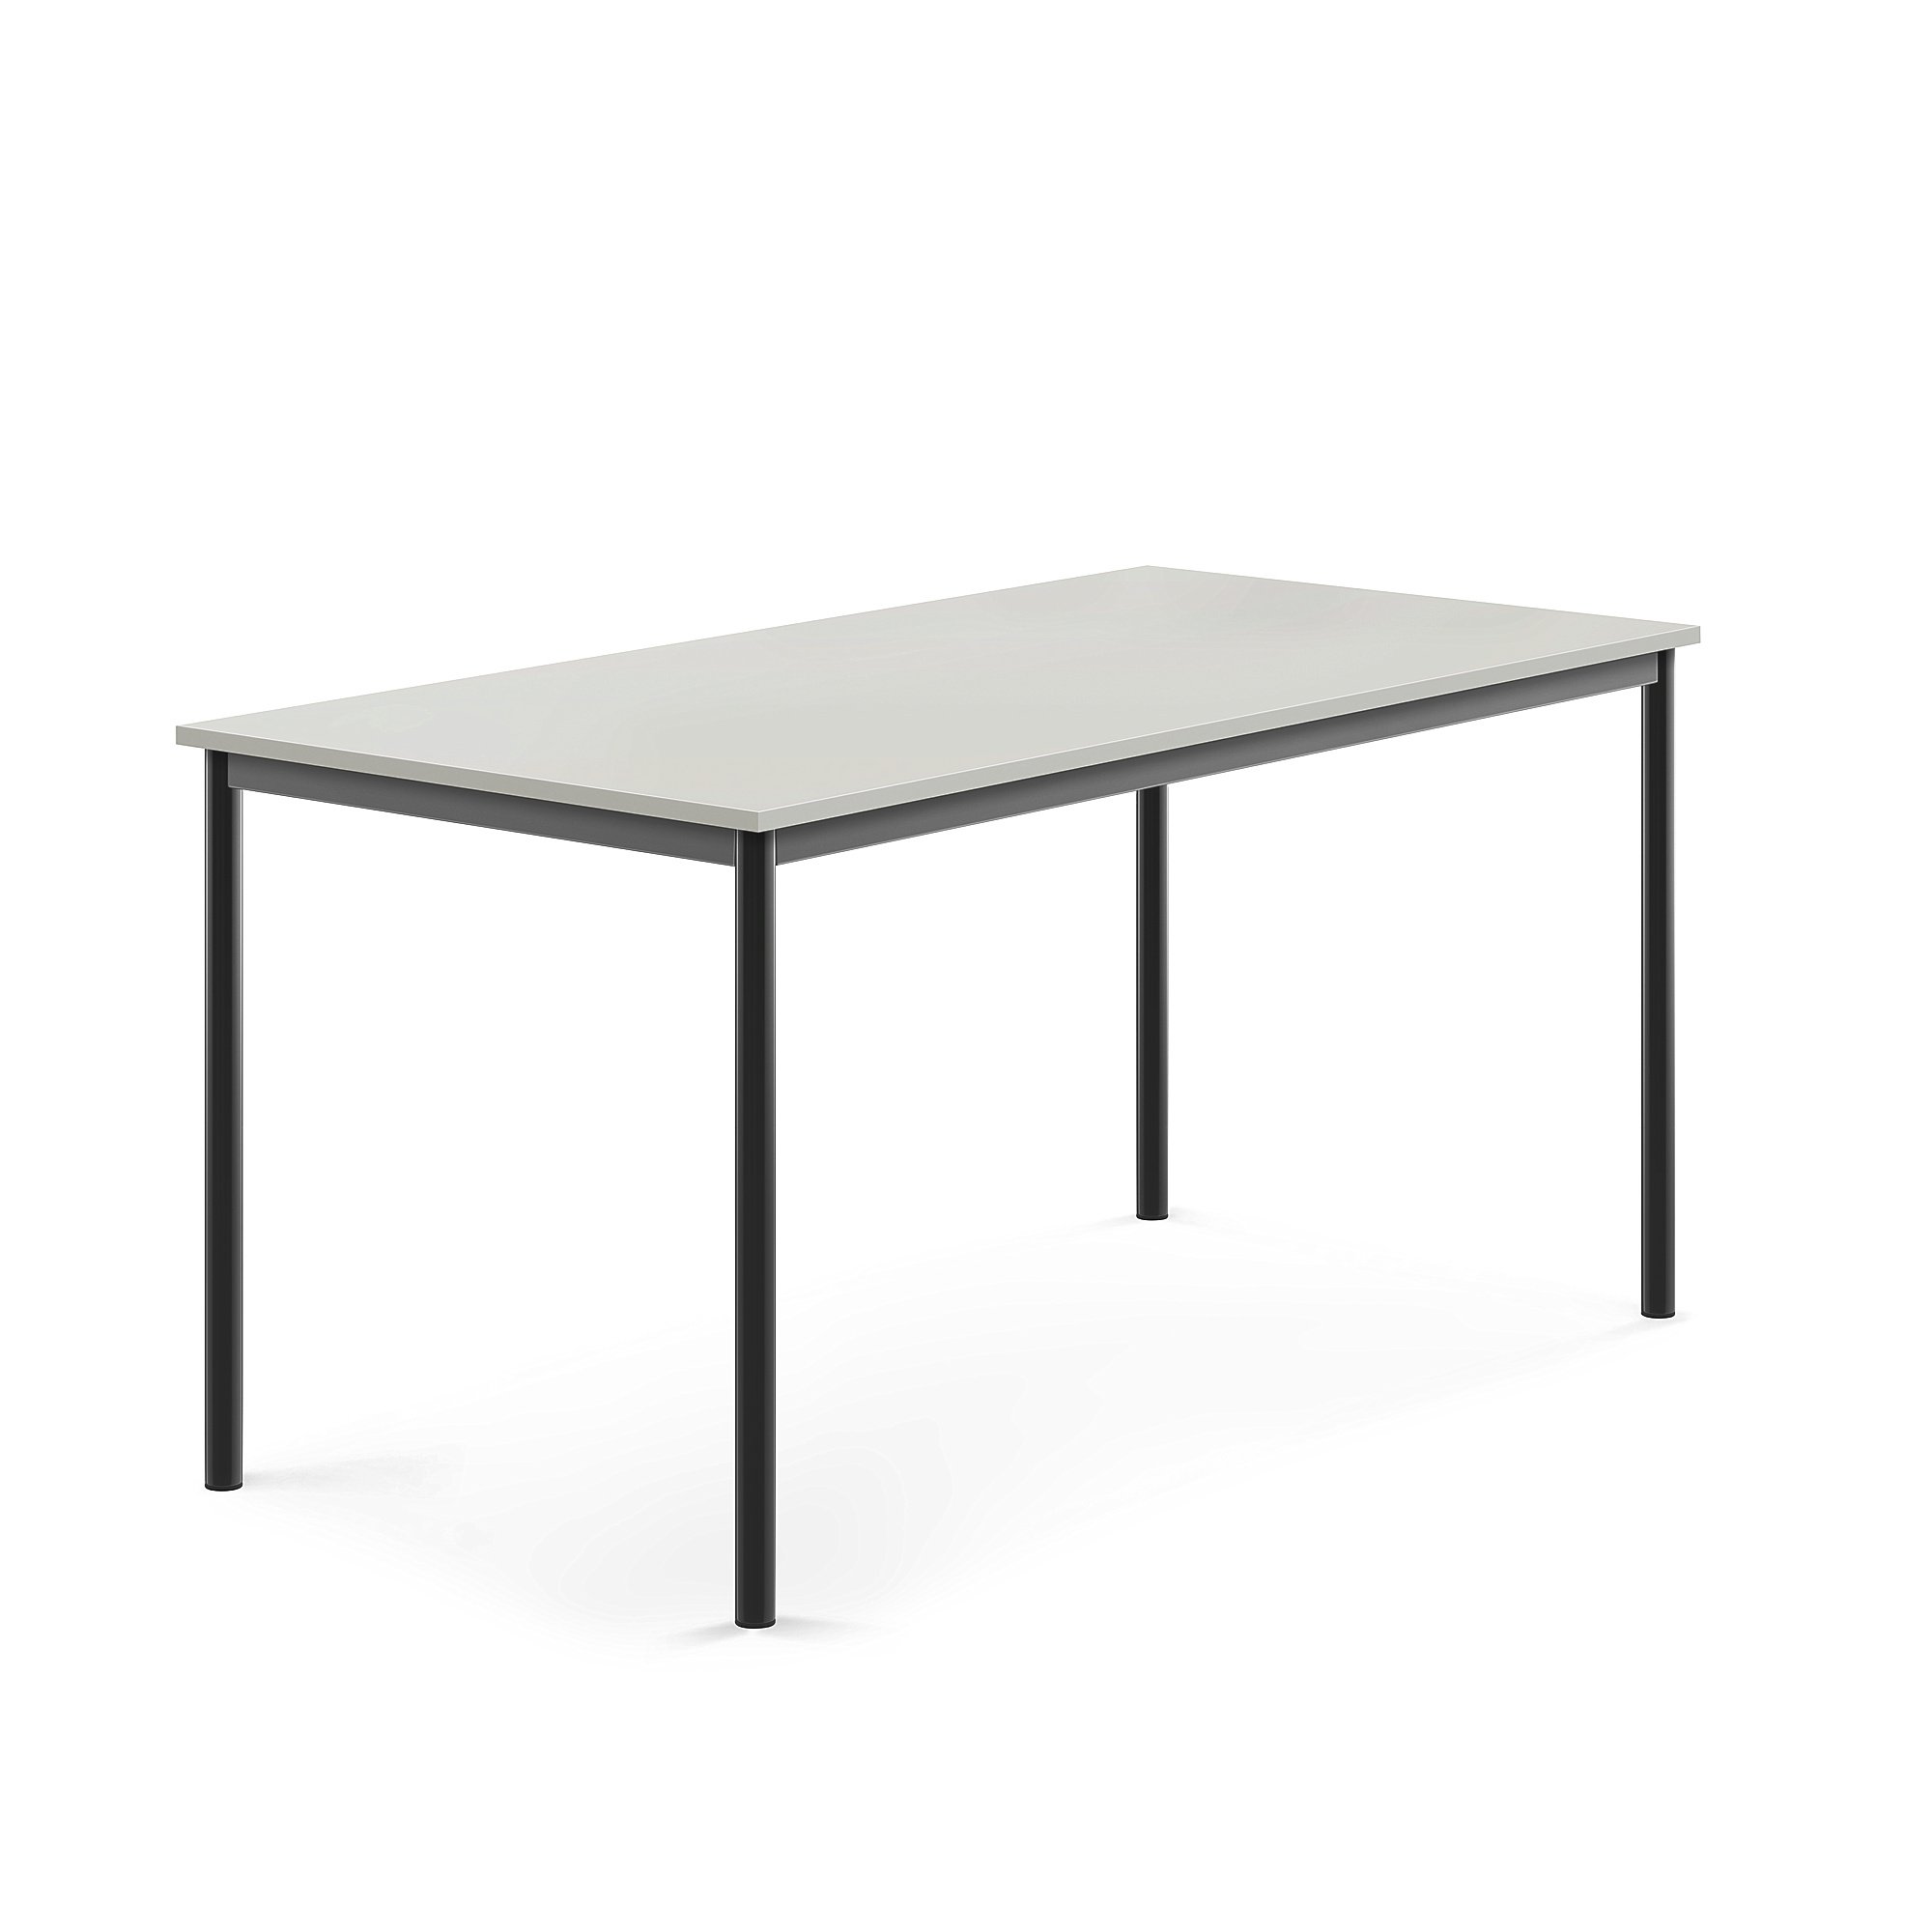 Stôl BORÅS, 1600x800x760 mm, laminát - šedá, antracit